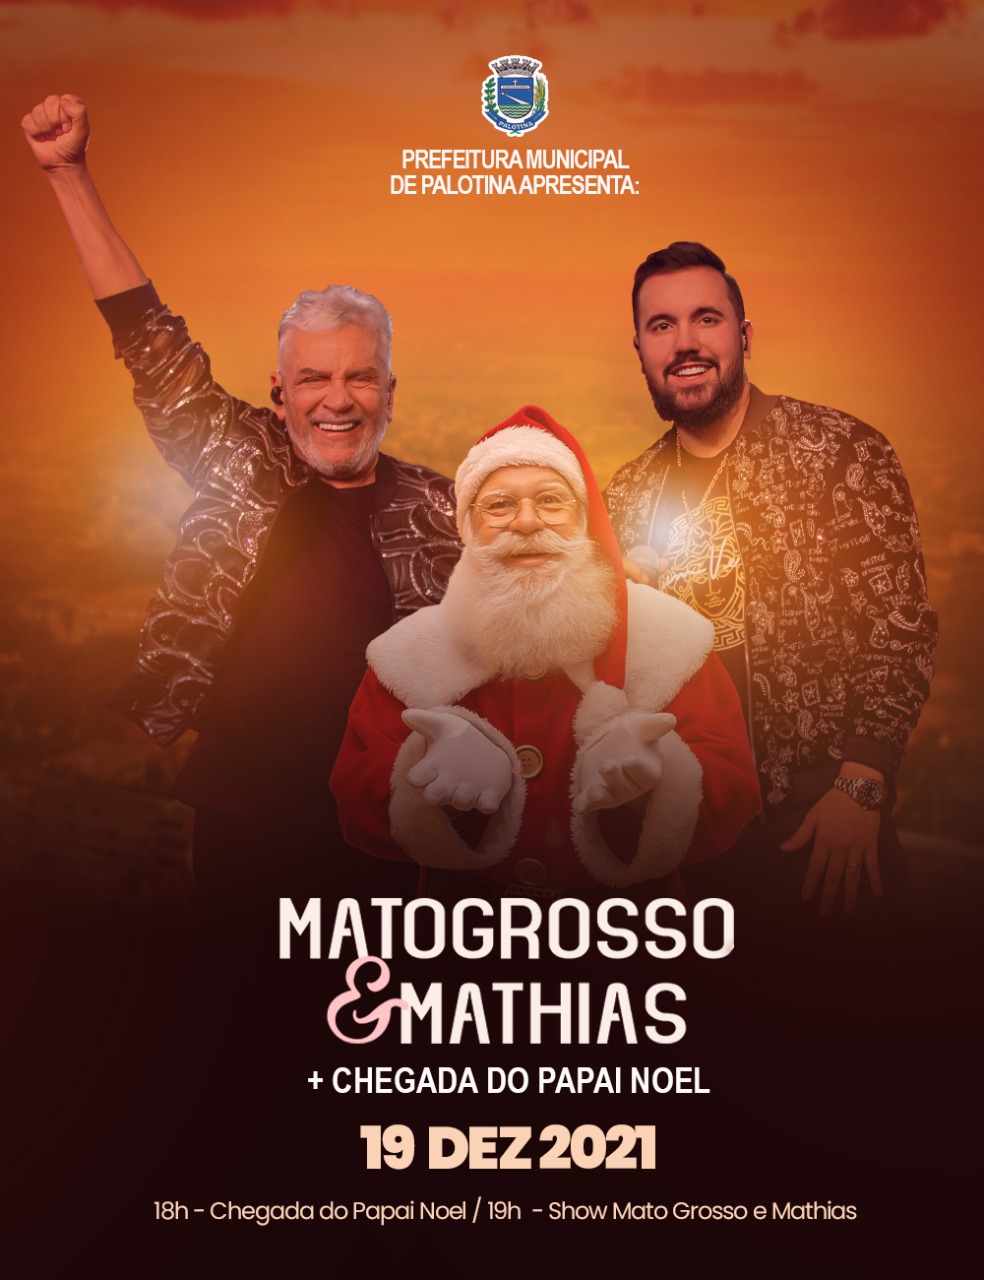 Matogrosso e Mathias vão fazer mega show no lago de Palotina   